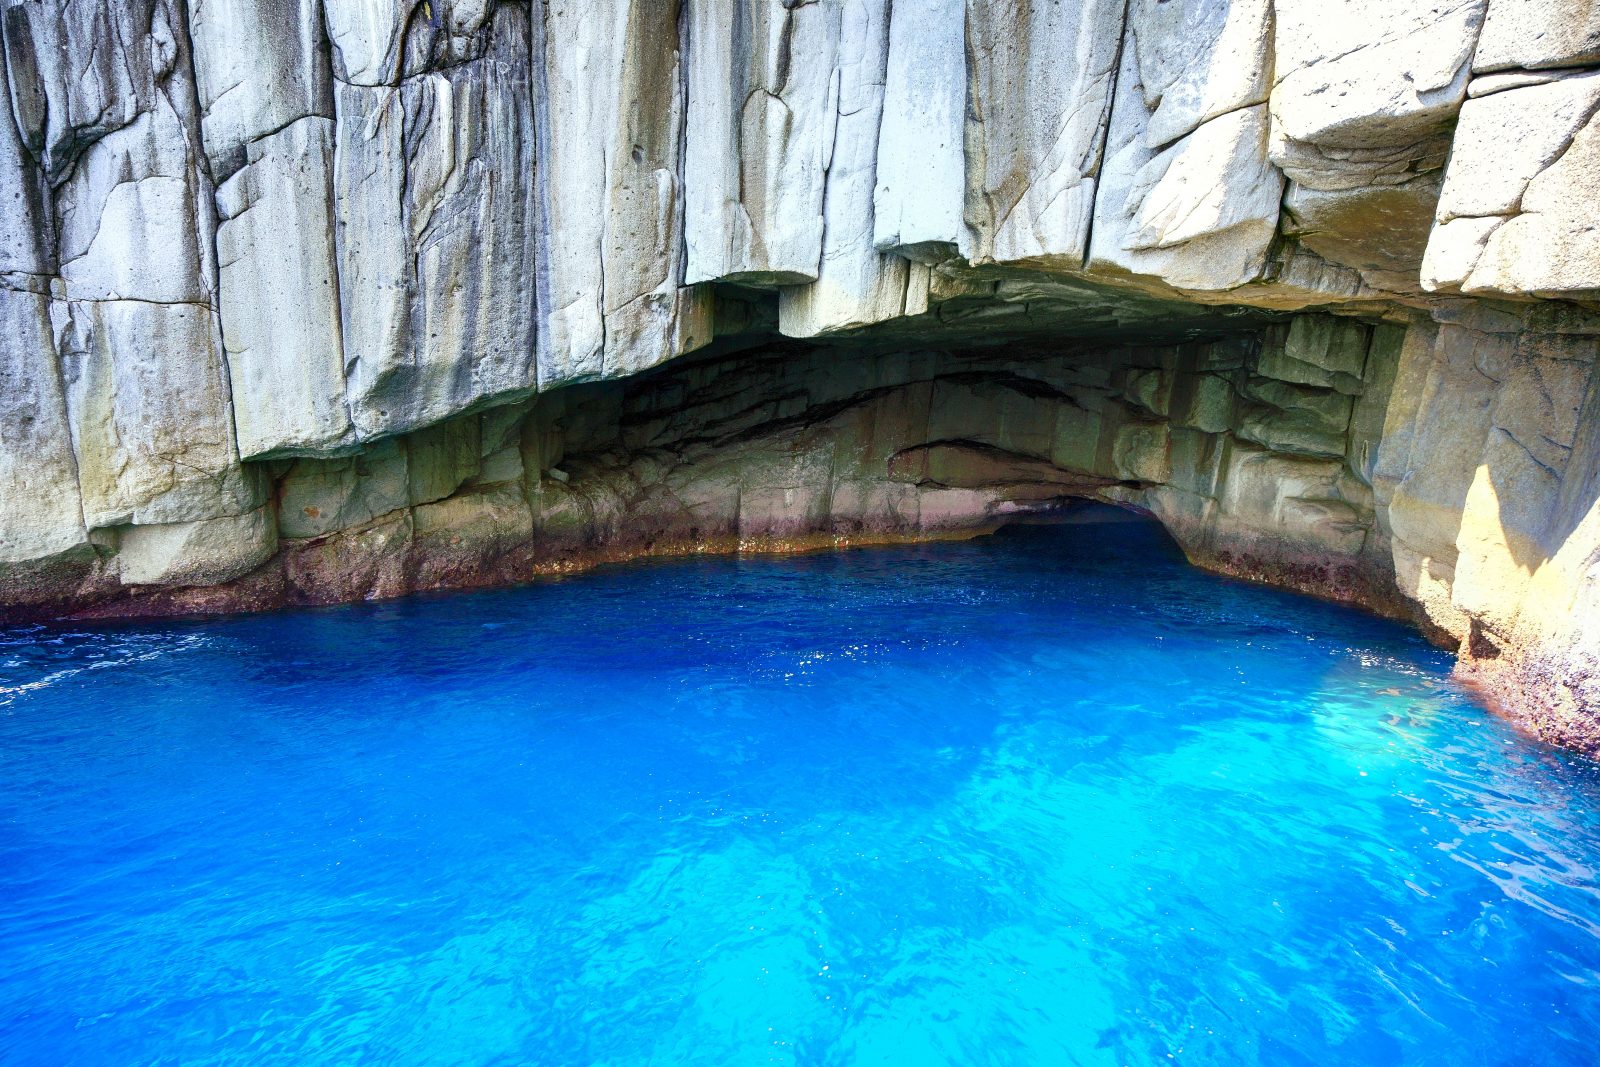 光り輝く青の洞窟